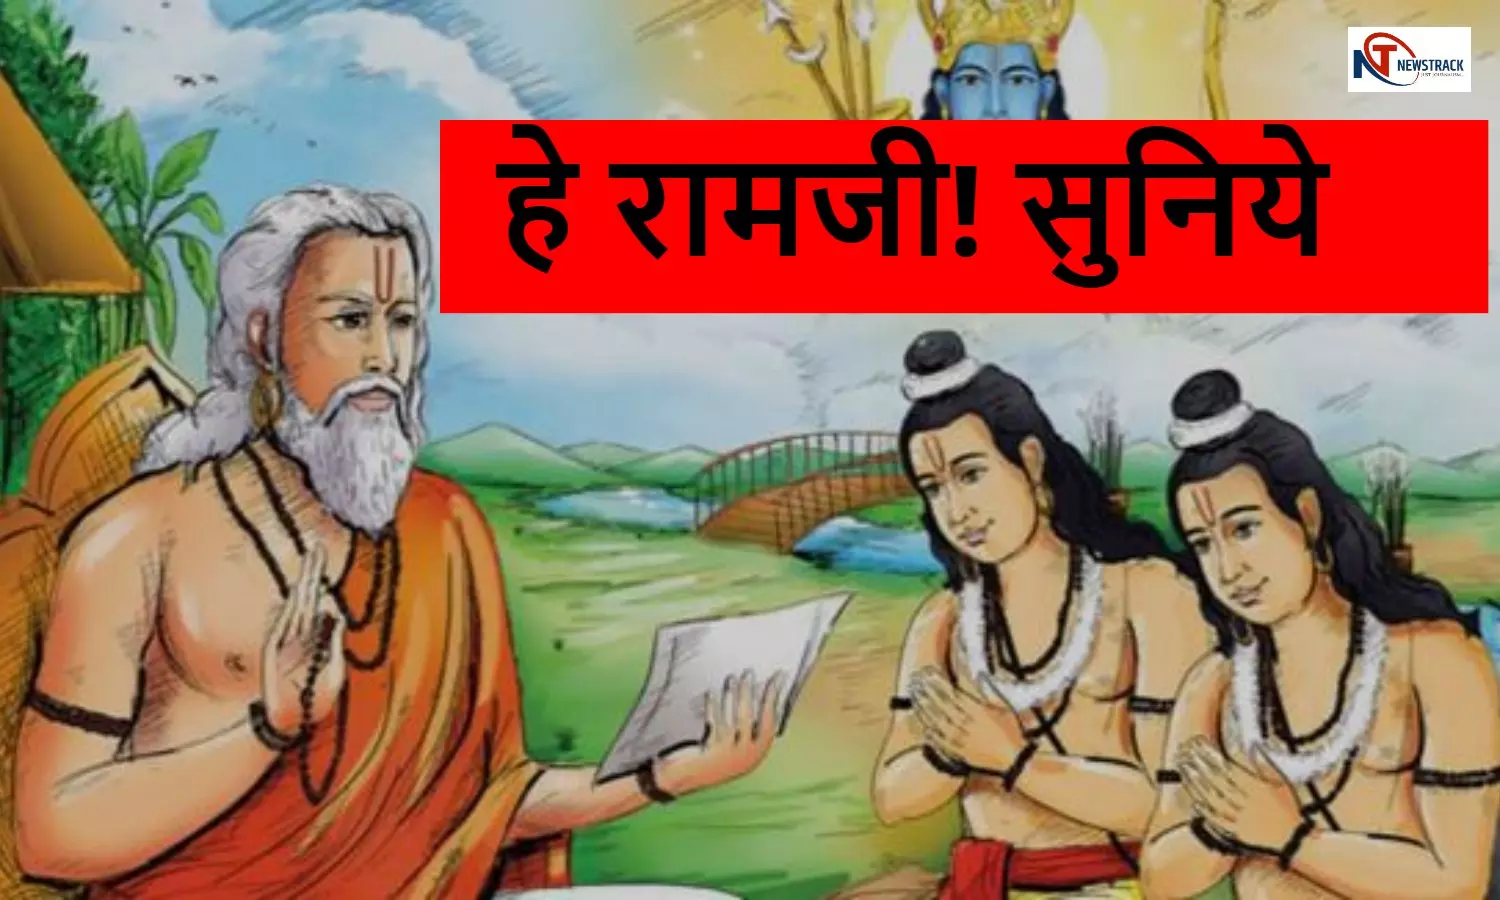 Shri Ram Ki Katha: हे रामजी! सुनिये, अब में वे स्थान बताता हूँ जहां आप सीताजी और लक्ष्मण जी समेत निवास करिये